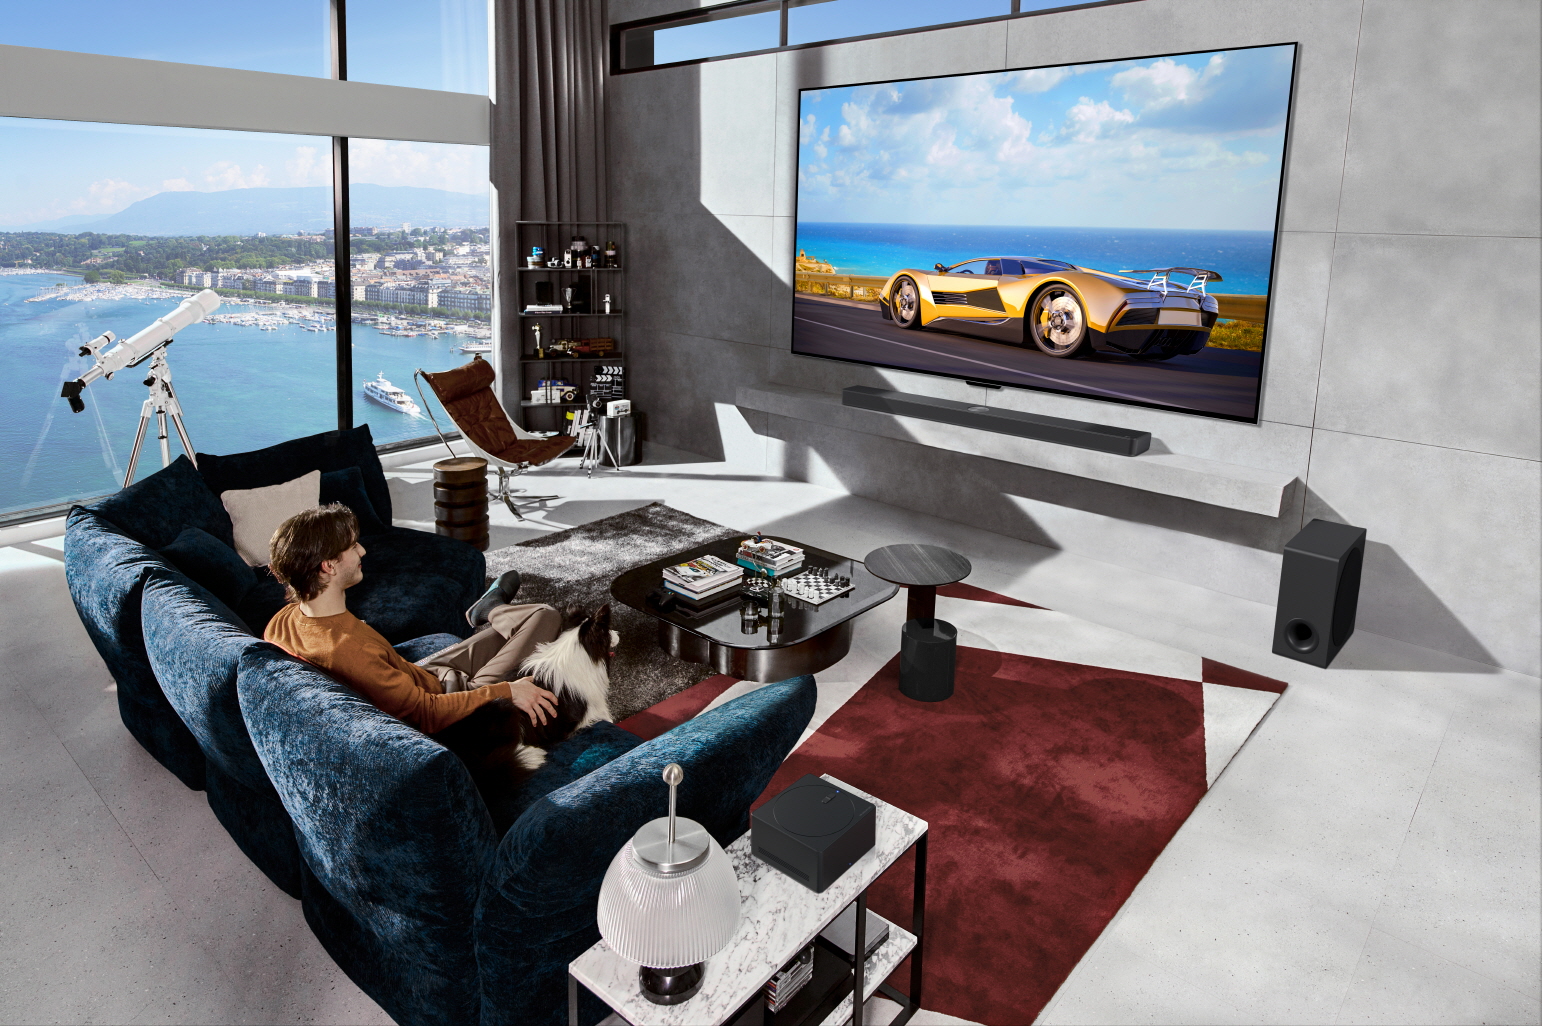 LG presenta los últimos televisores OLED evo a la vanguardia de la innovación y la evolución